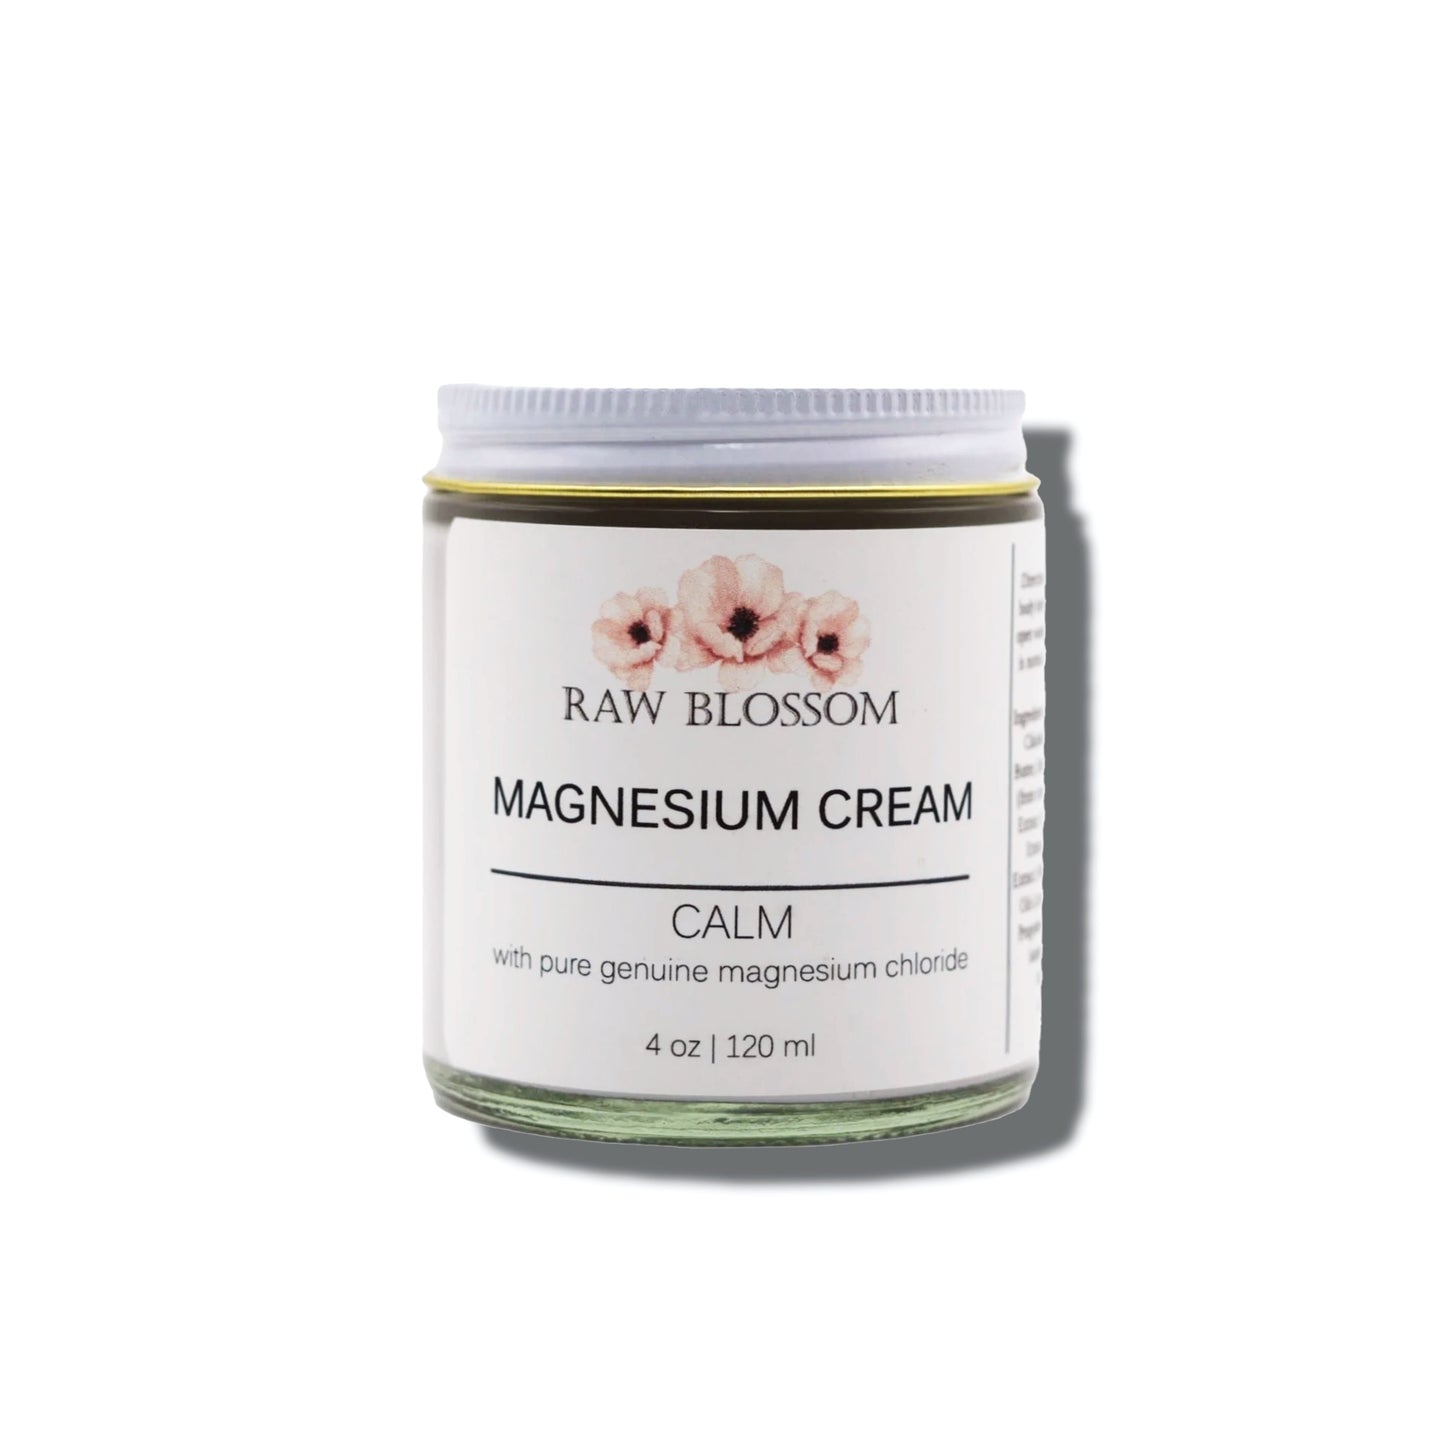 Calming Magnesium Cream